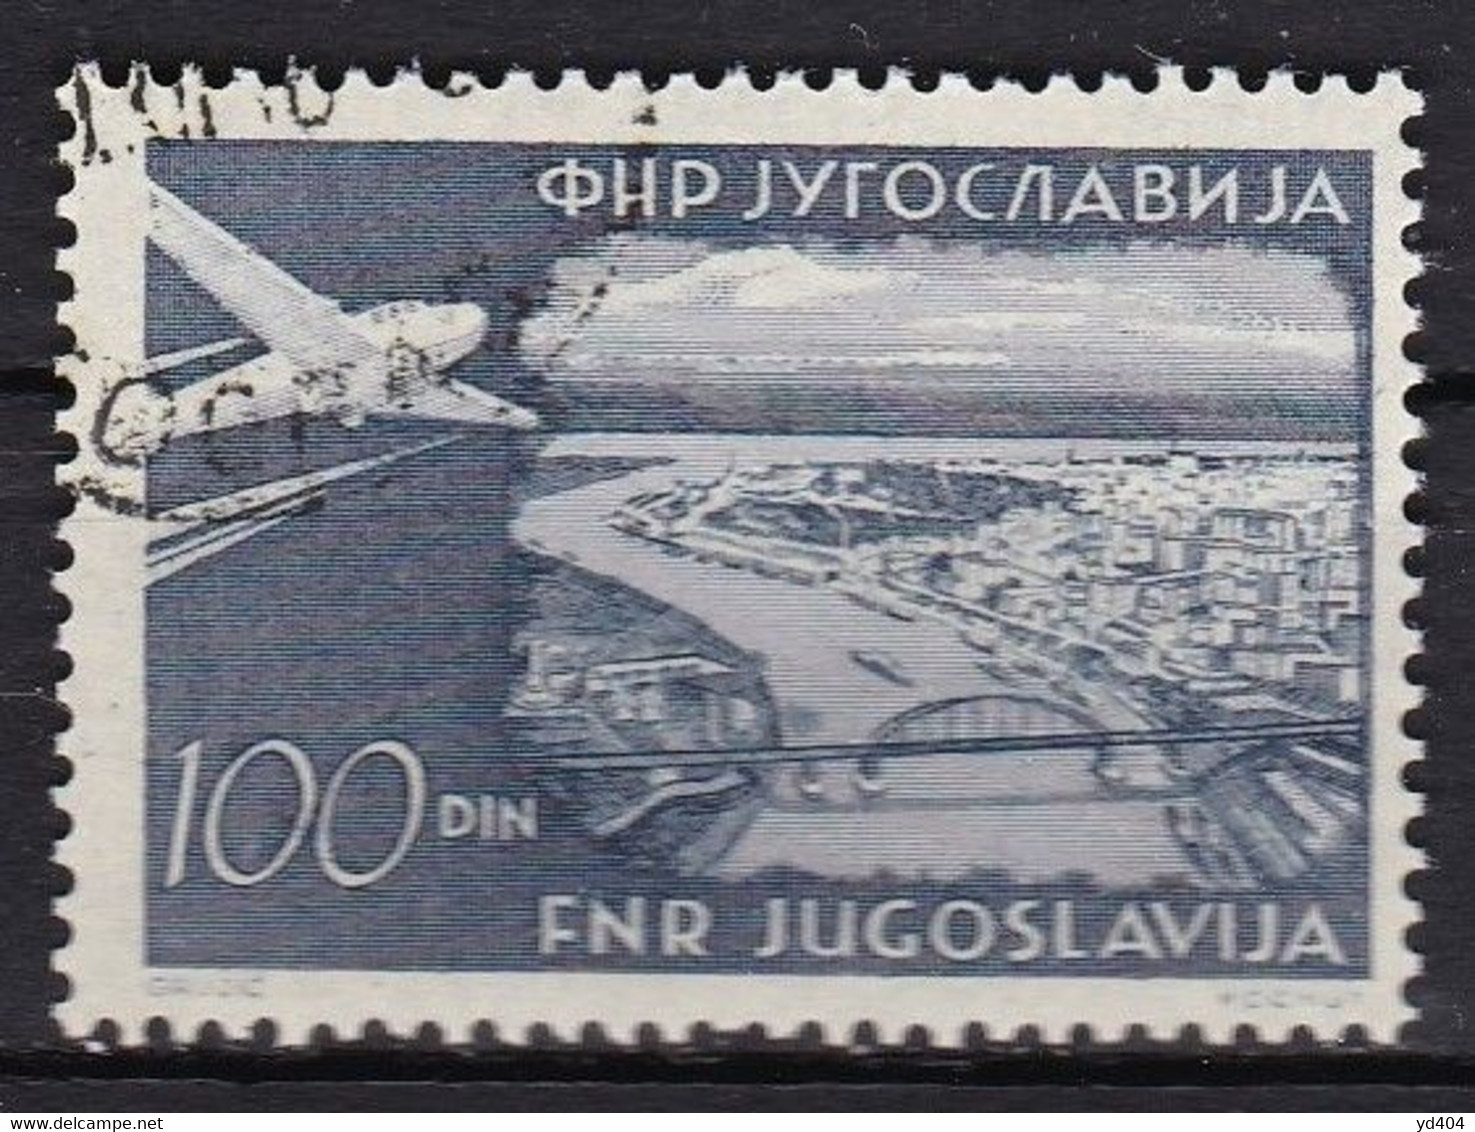 YU409 – YOUGOSLAVIA – AIRMAIL – 1951 – PLANE OVER BELGRADE – Y&T # 40 USED 22 € - Posta Aerea